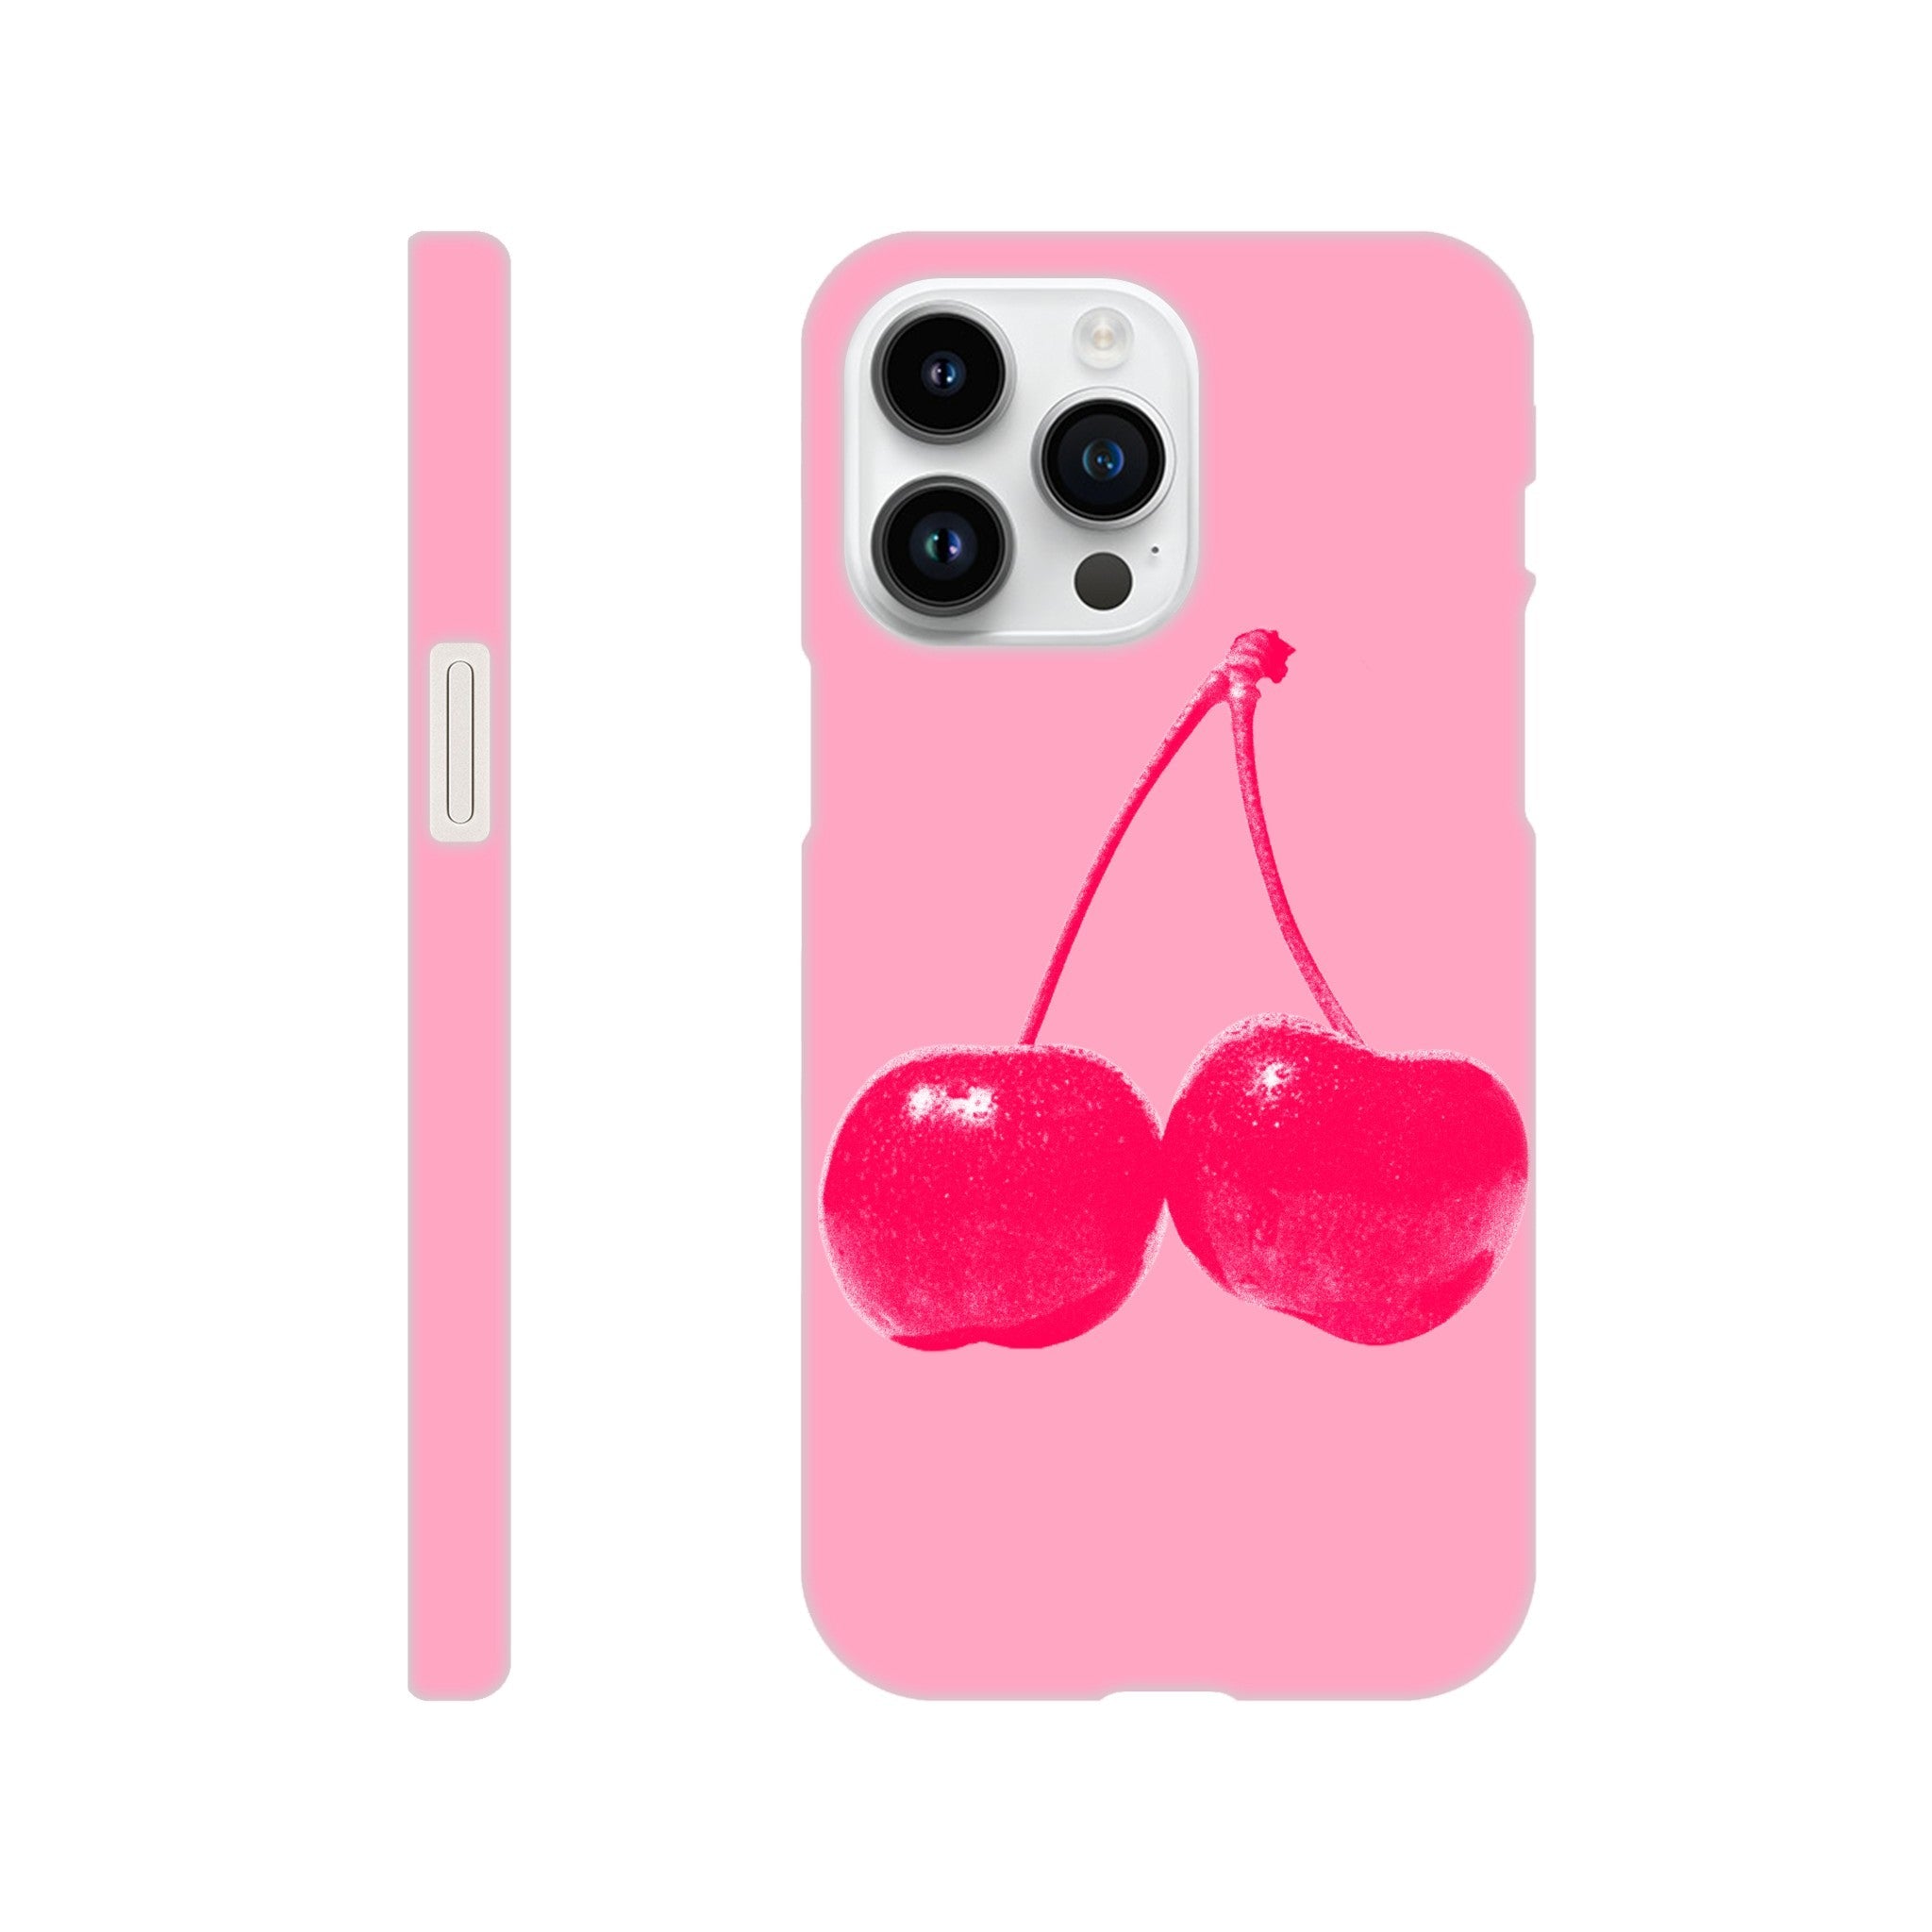 'Cherry' phone case